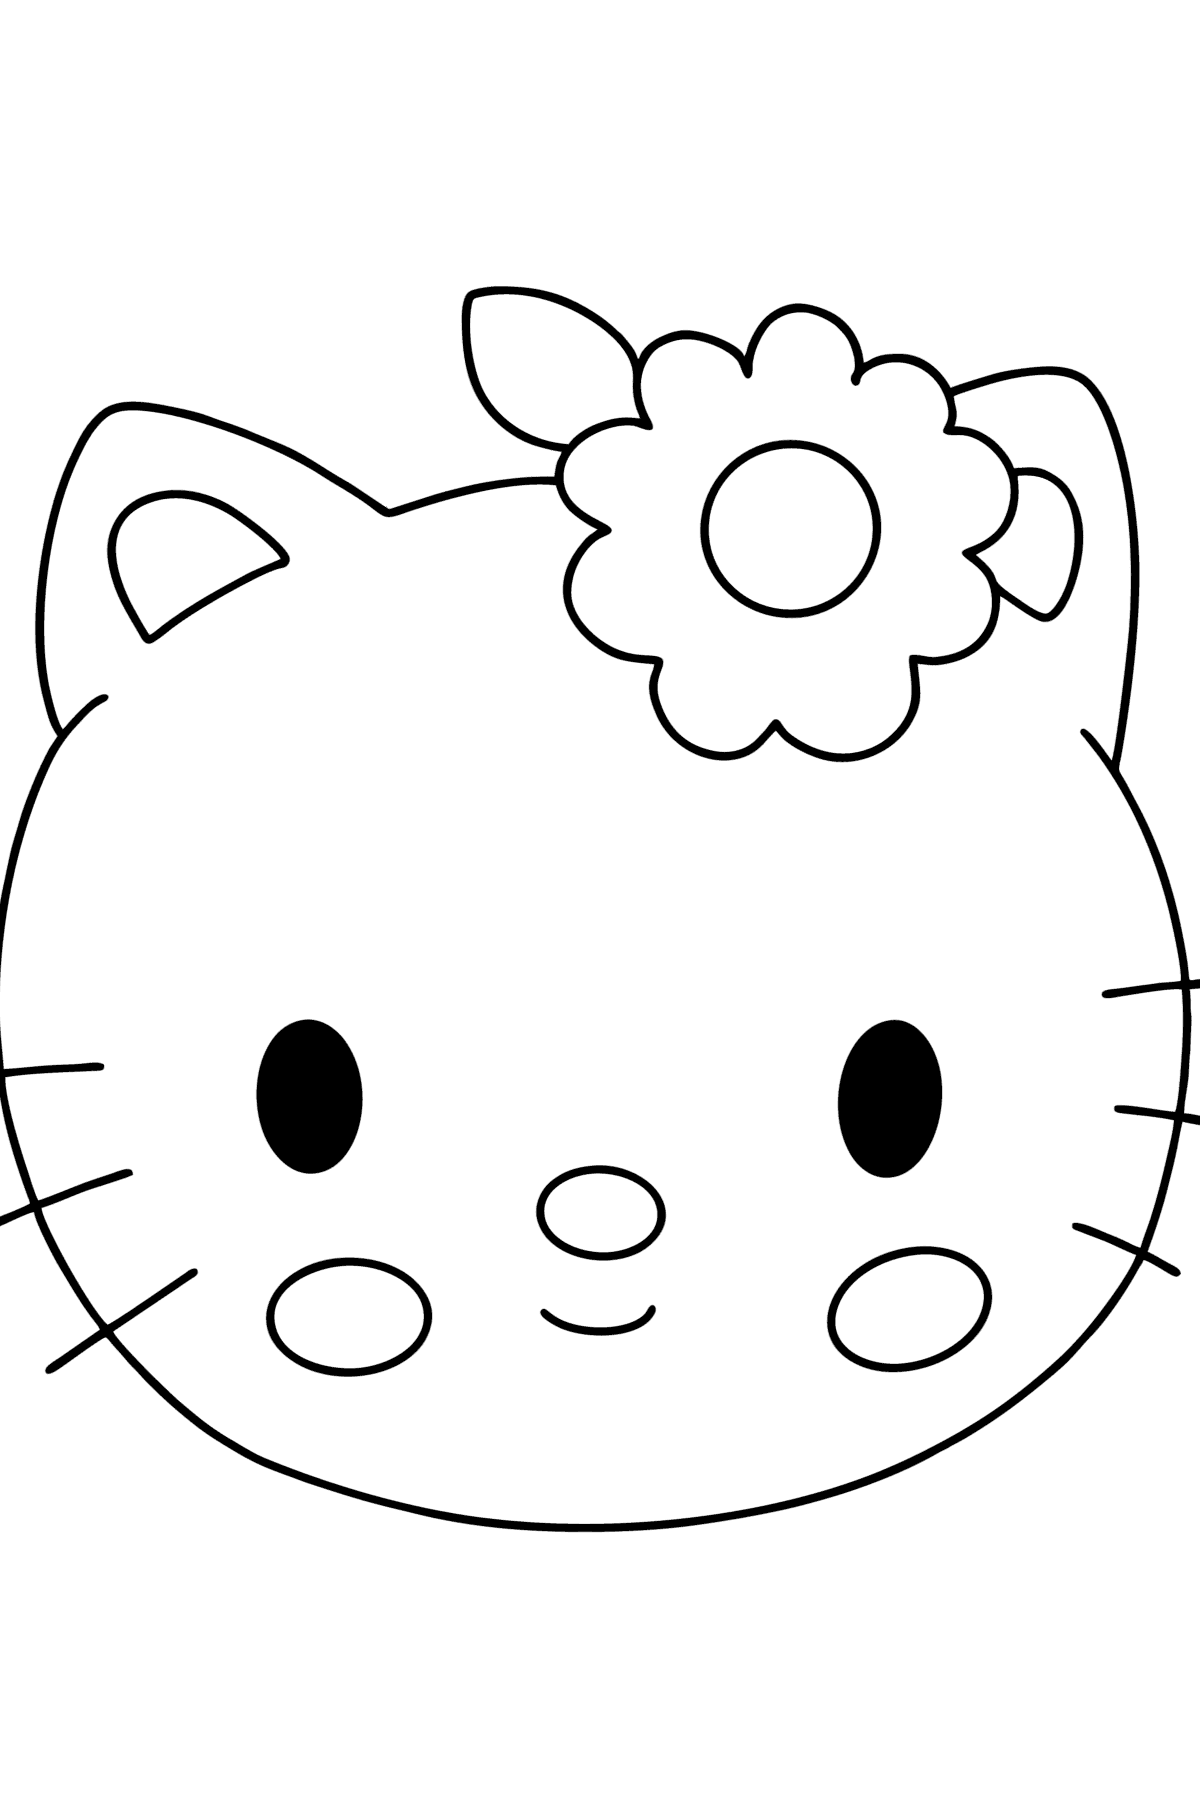 Boyama sayfası Hello Kitty ağızlık - Boyamalar çocuklar için